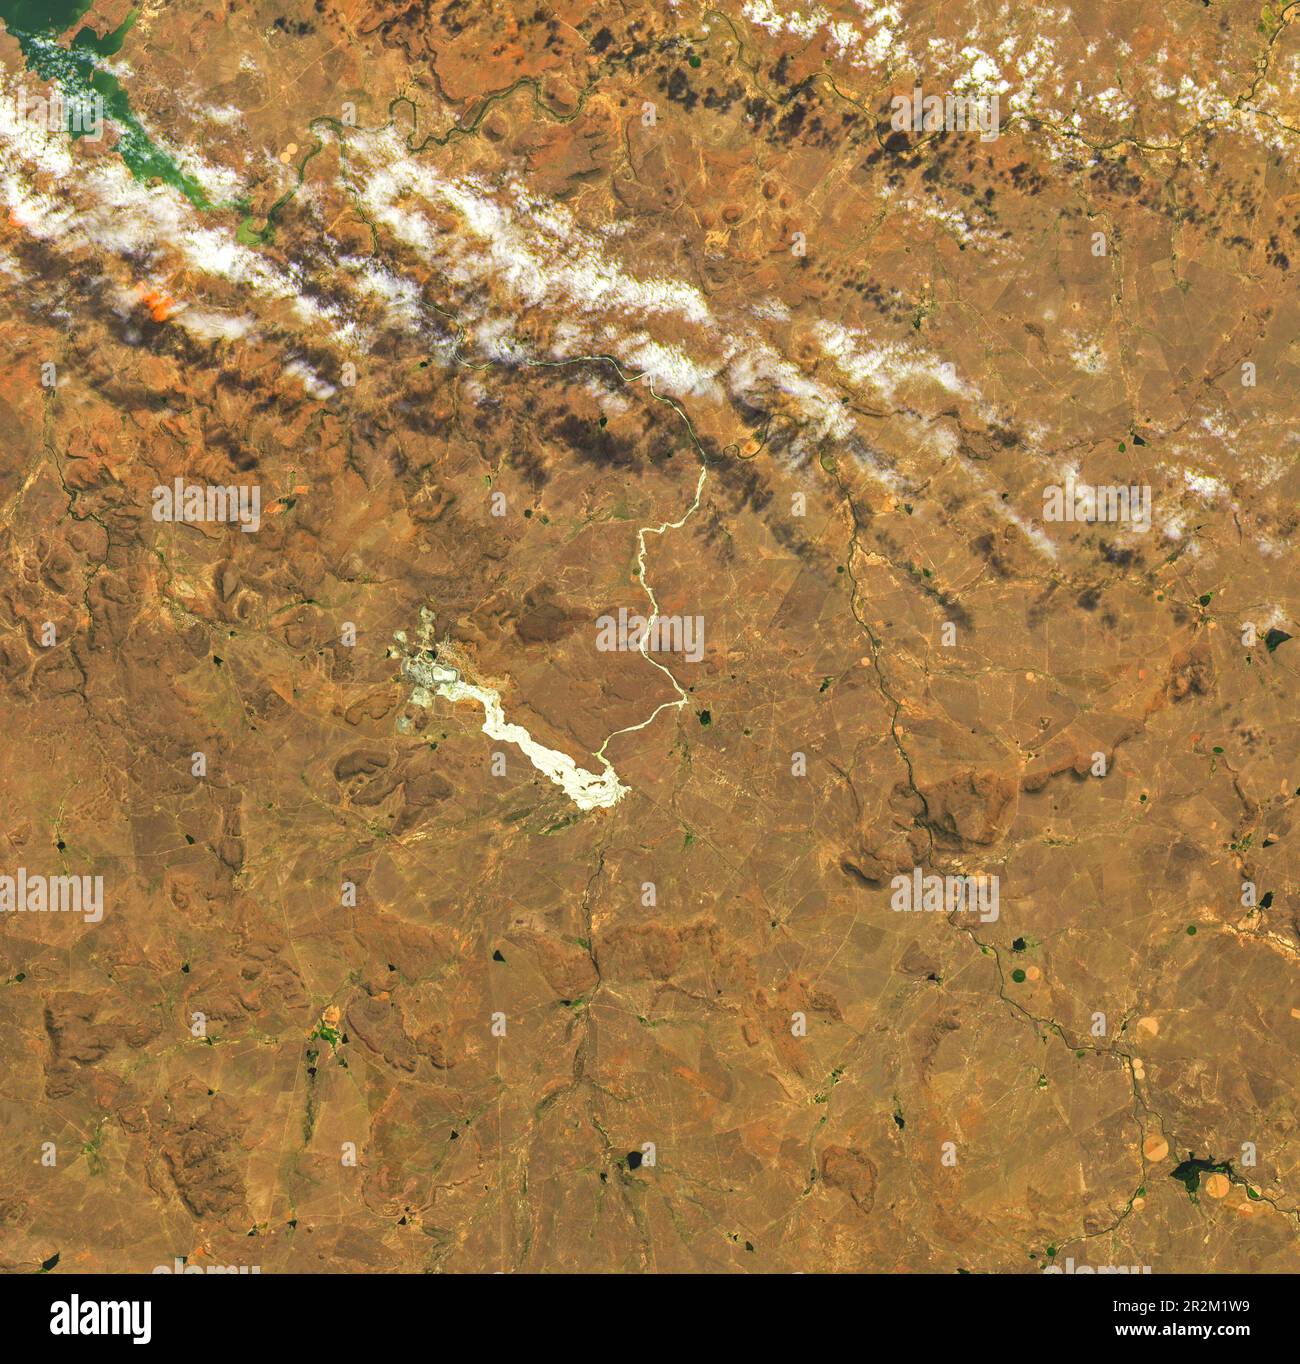 Vista aérea del colapso de la presa y los relaves resultantes en Jagersfontein, Sudáfrica el 11 de septiembre de 2022 y los relaves resultantes Foto de stock